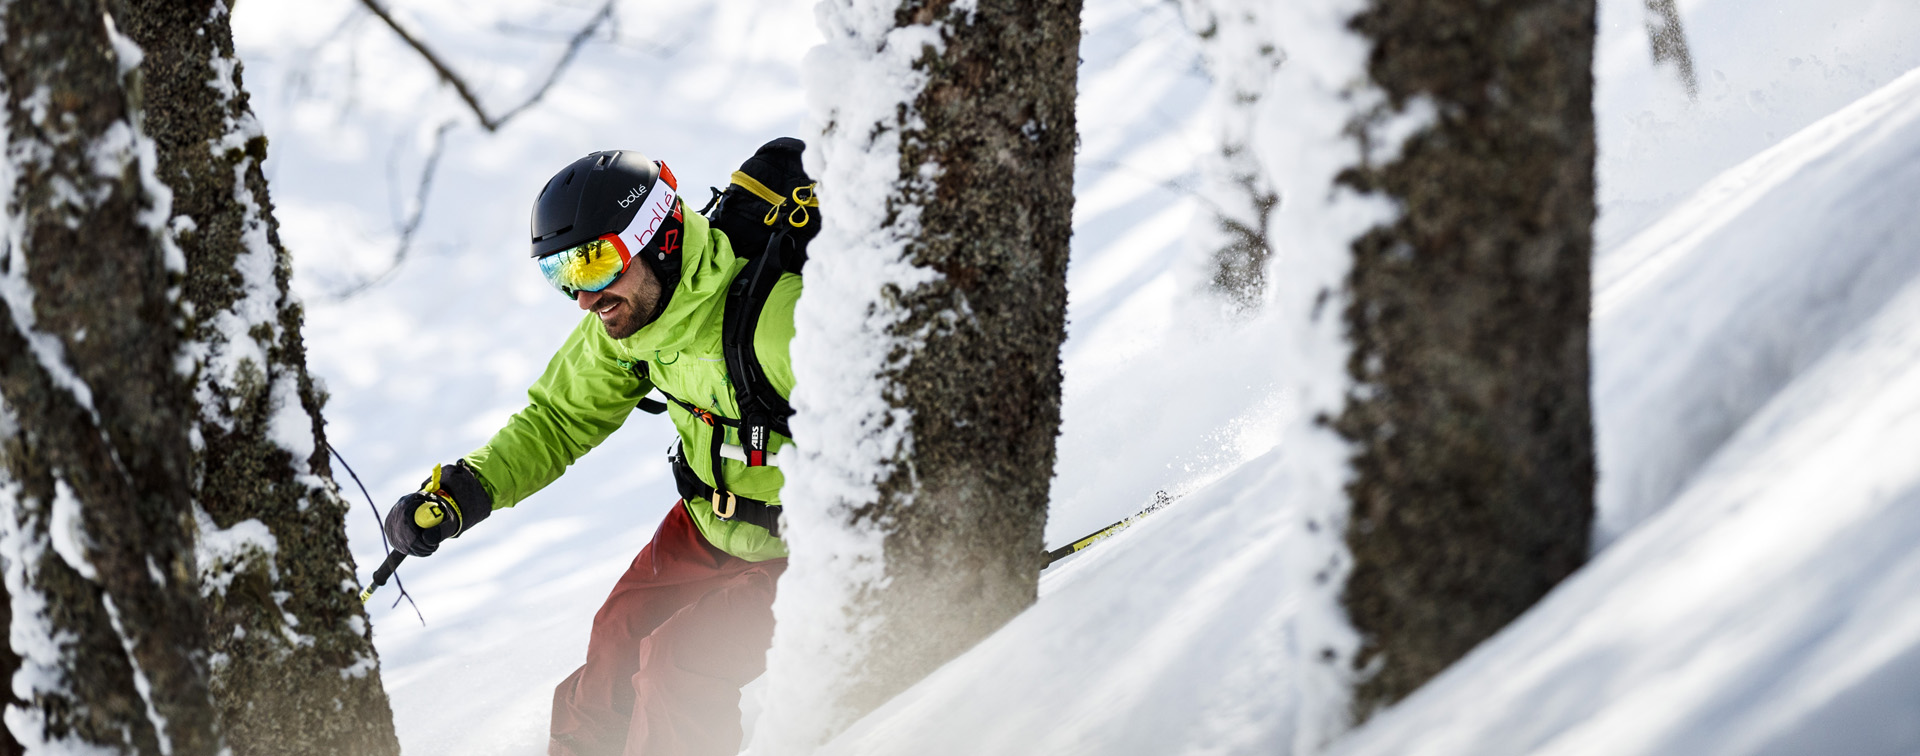 Cómo elegir el mejor casco de snowboard para ti?